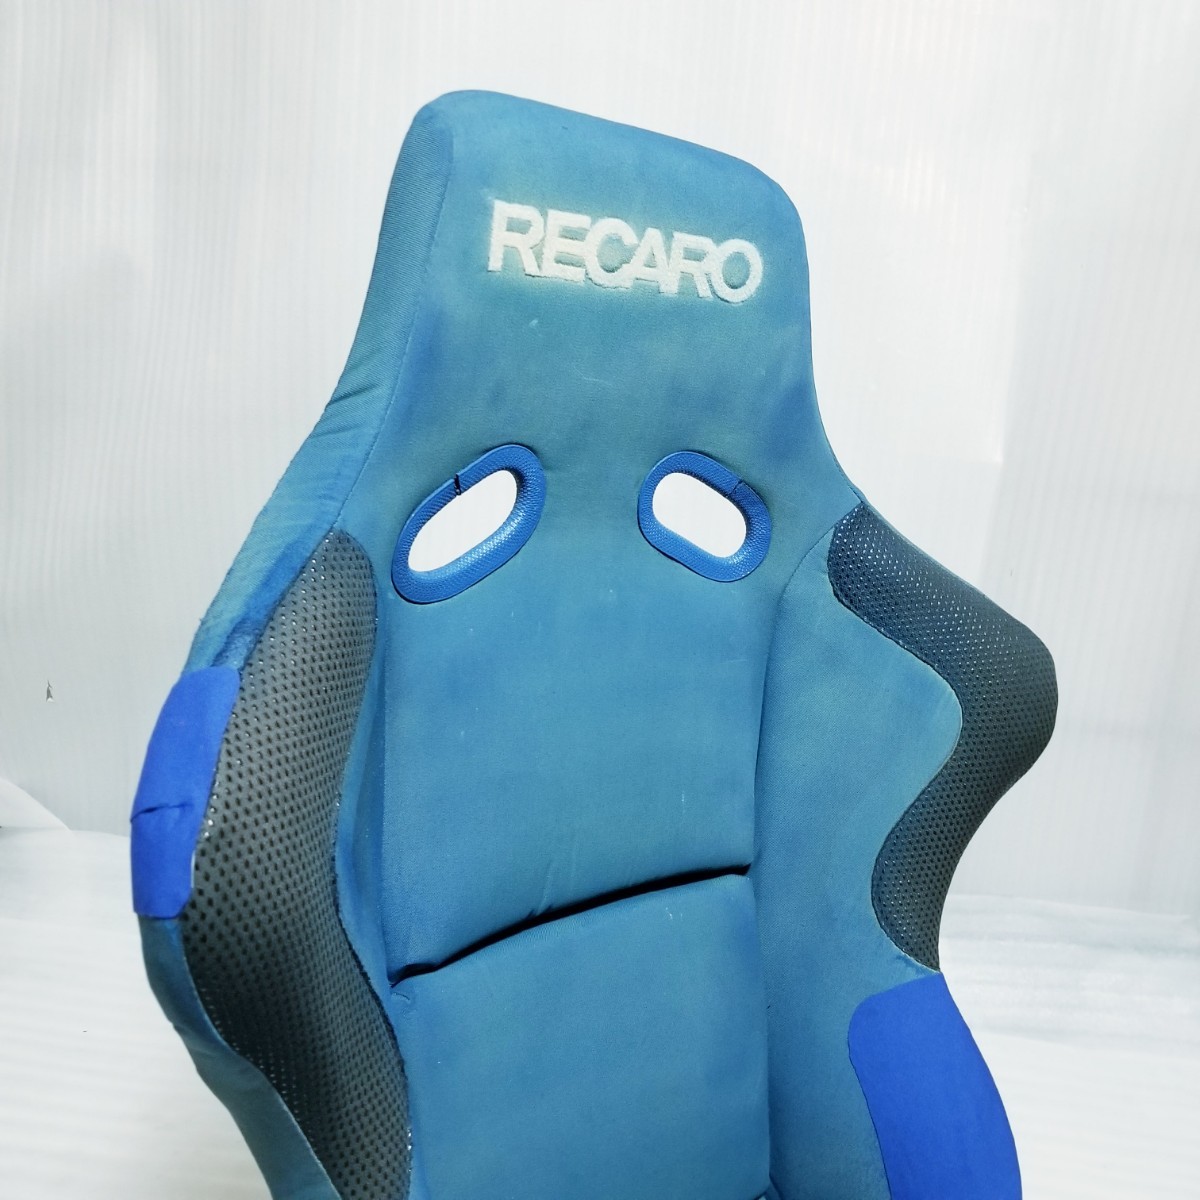 [ быстрое решение бесплатная доставка ] синий RECARO SP-G Рекаро SPG сиденье ковшового типа full backet немедленная уплата 